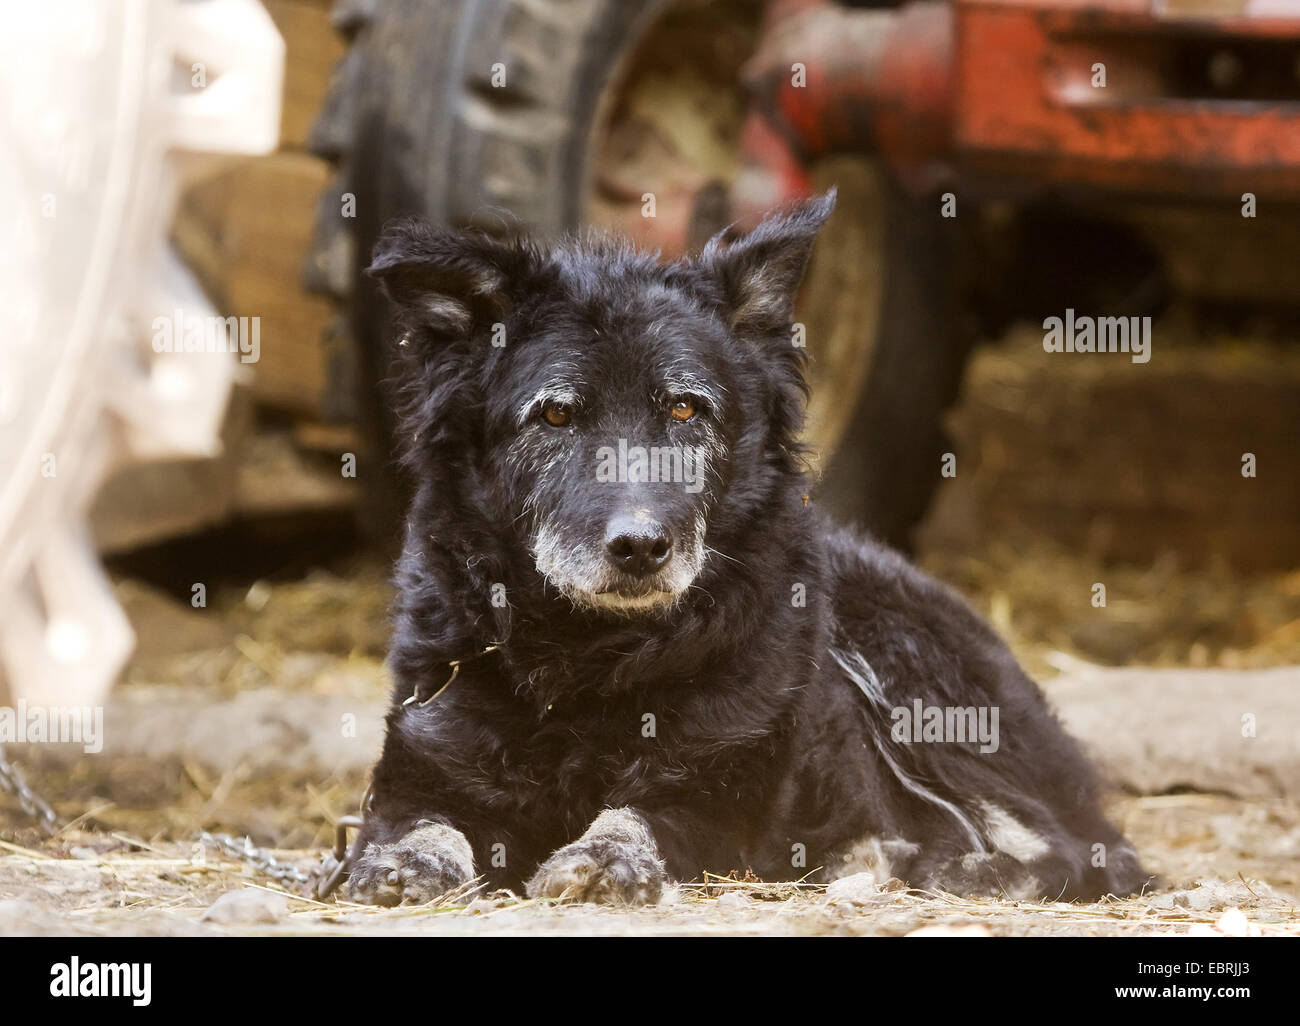 Chien domestique (Canis lupus f. familiaris), vieux chien enchaîné lying in avant d'un tracteur dans une ferme, l'Allemagne, Bade-Wurtemberg Banque D'Images